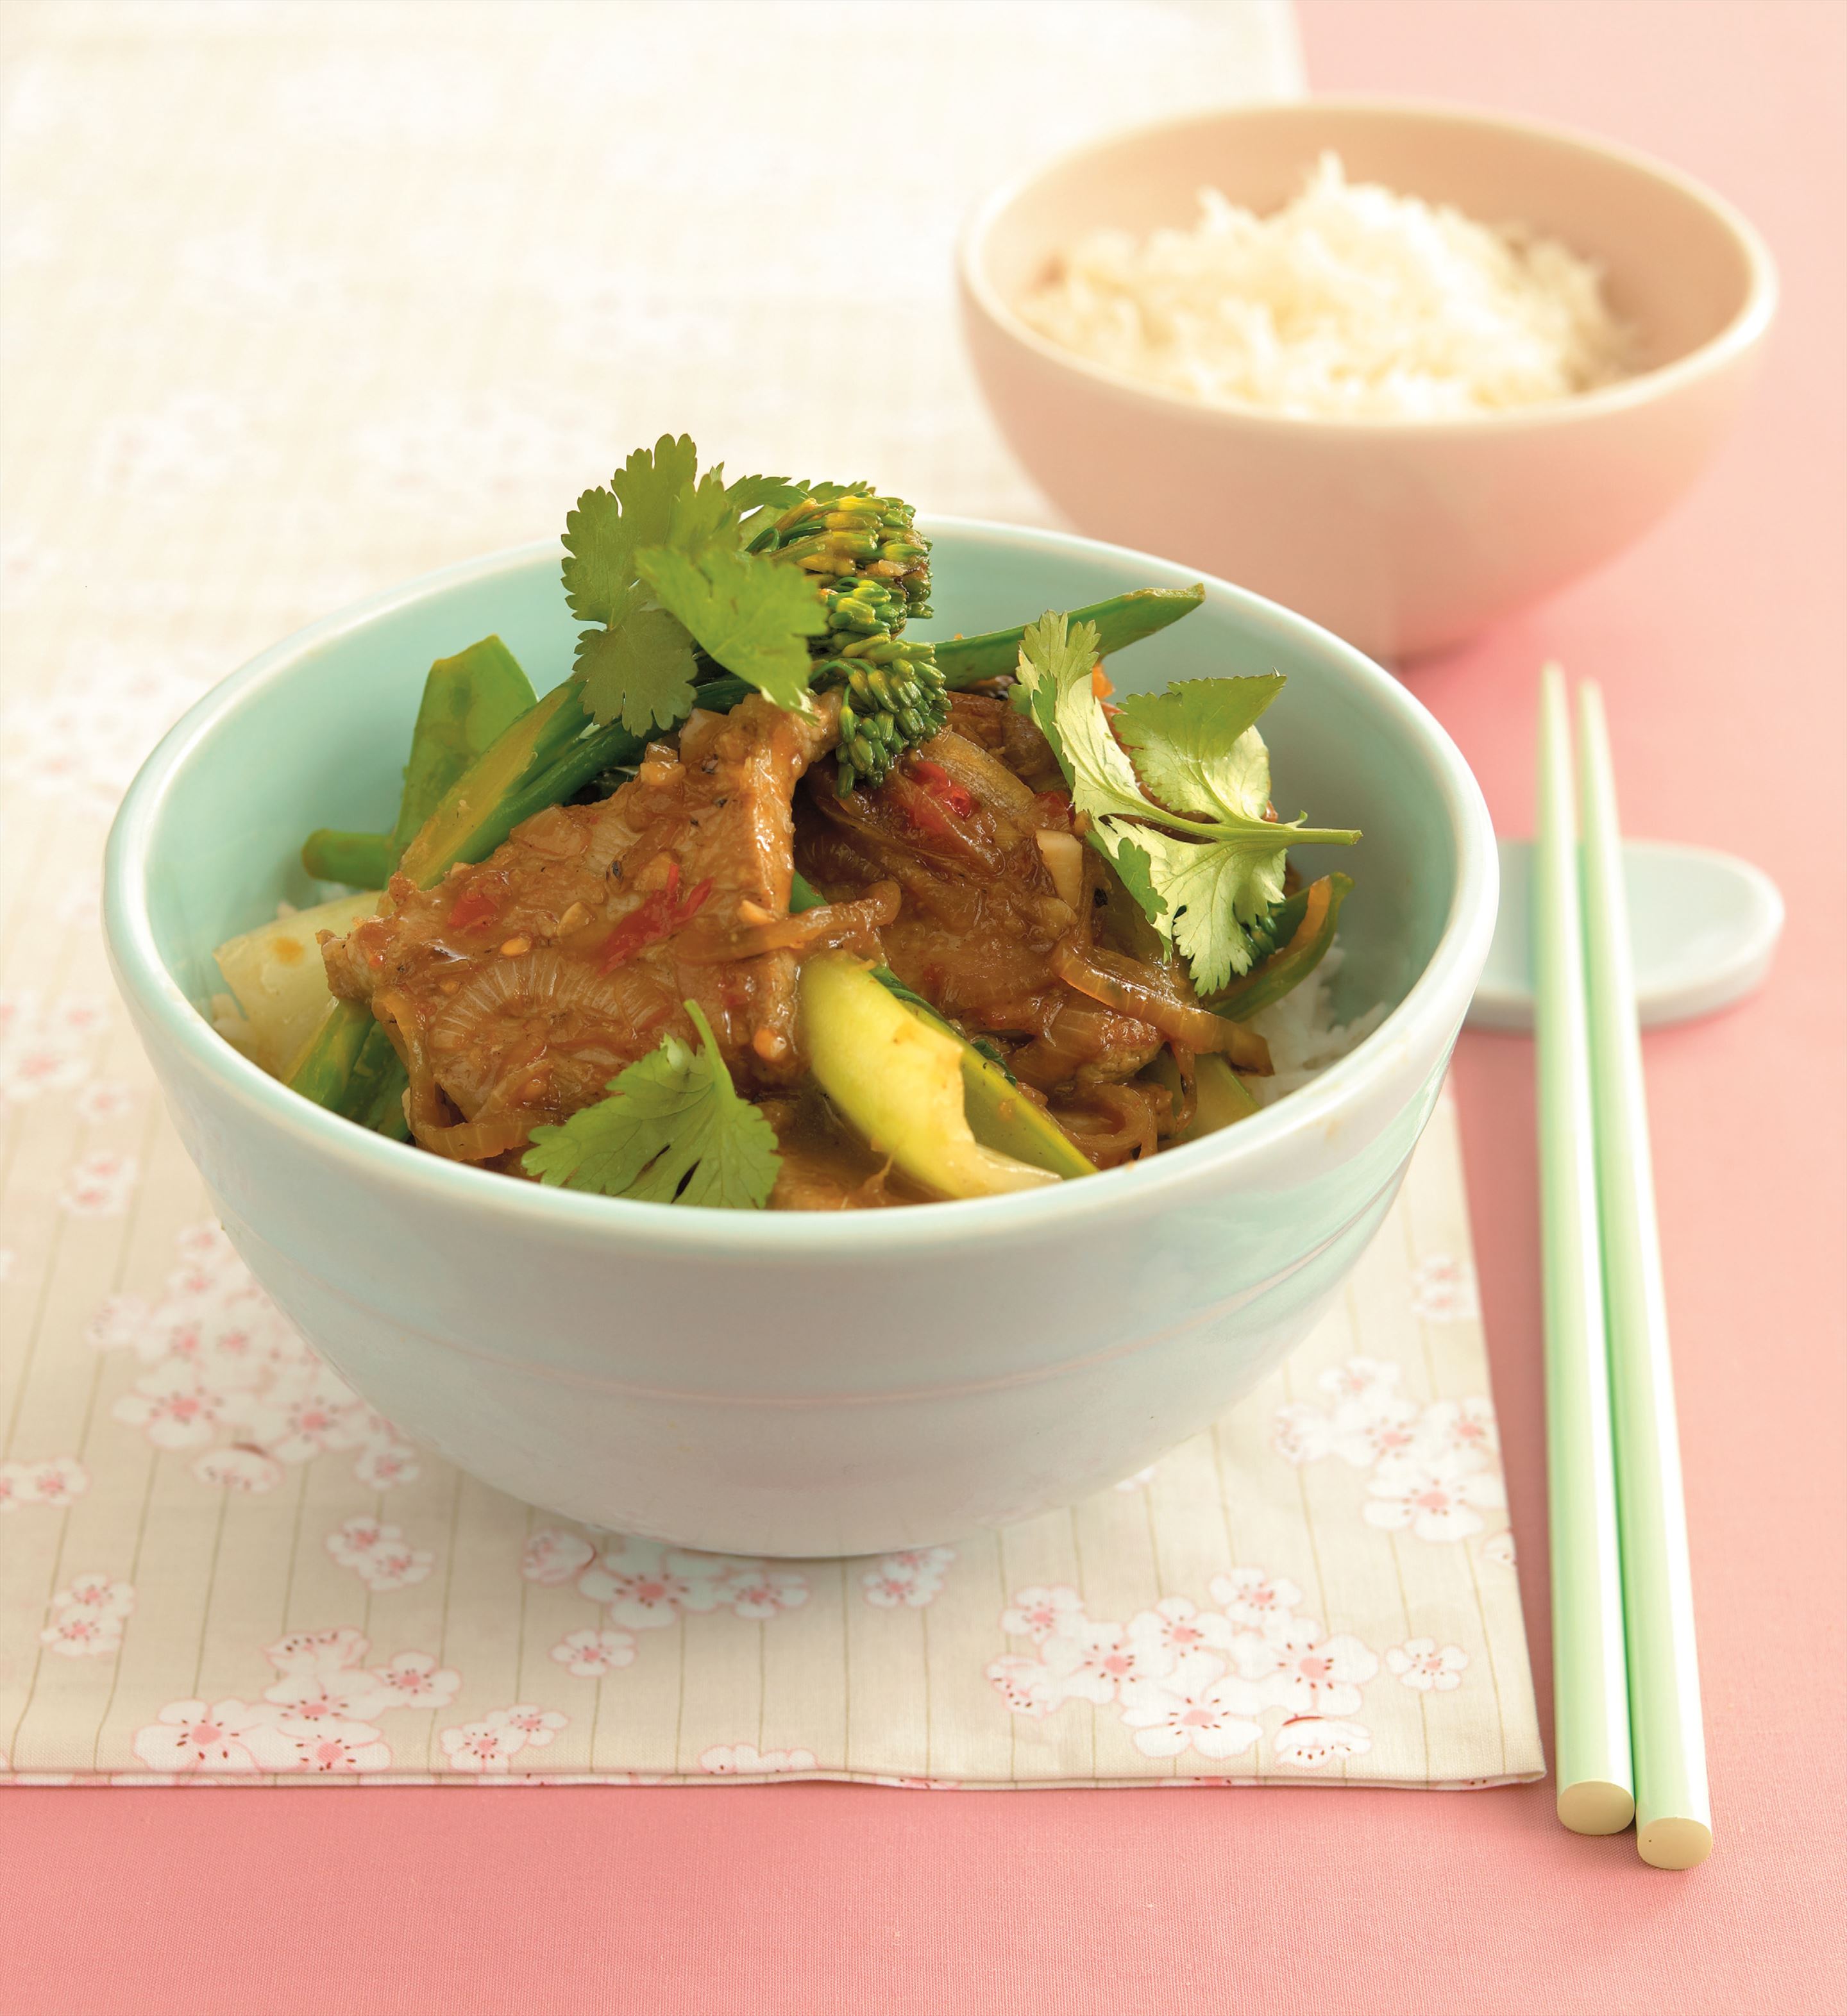 Pork and Asian greens stir-fry